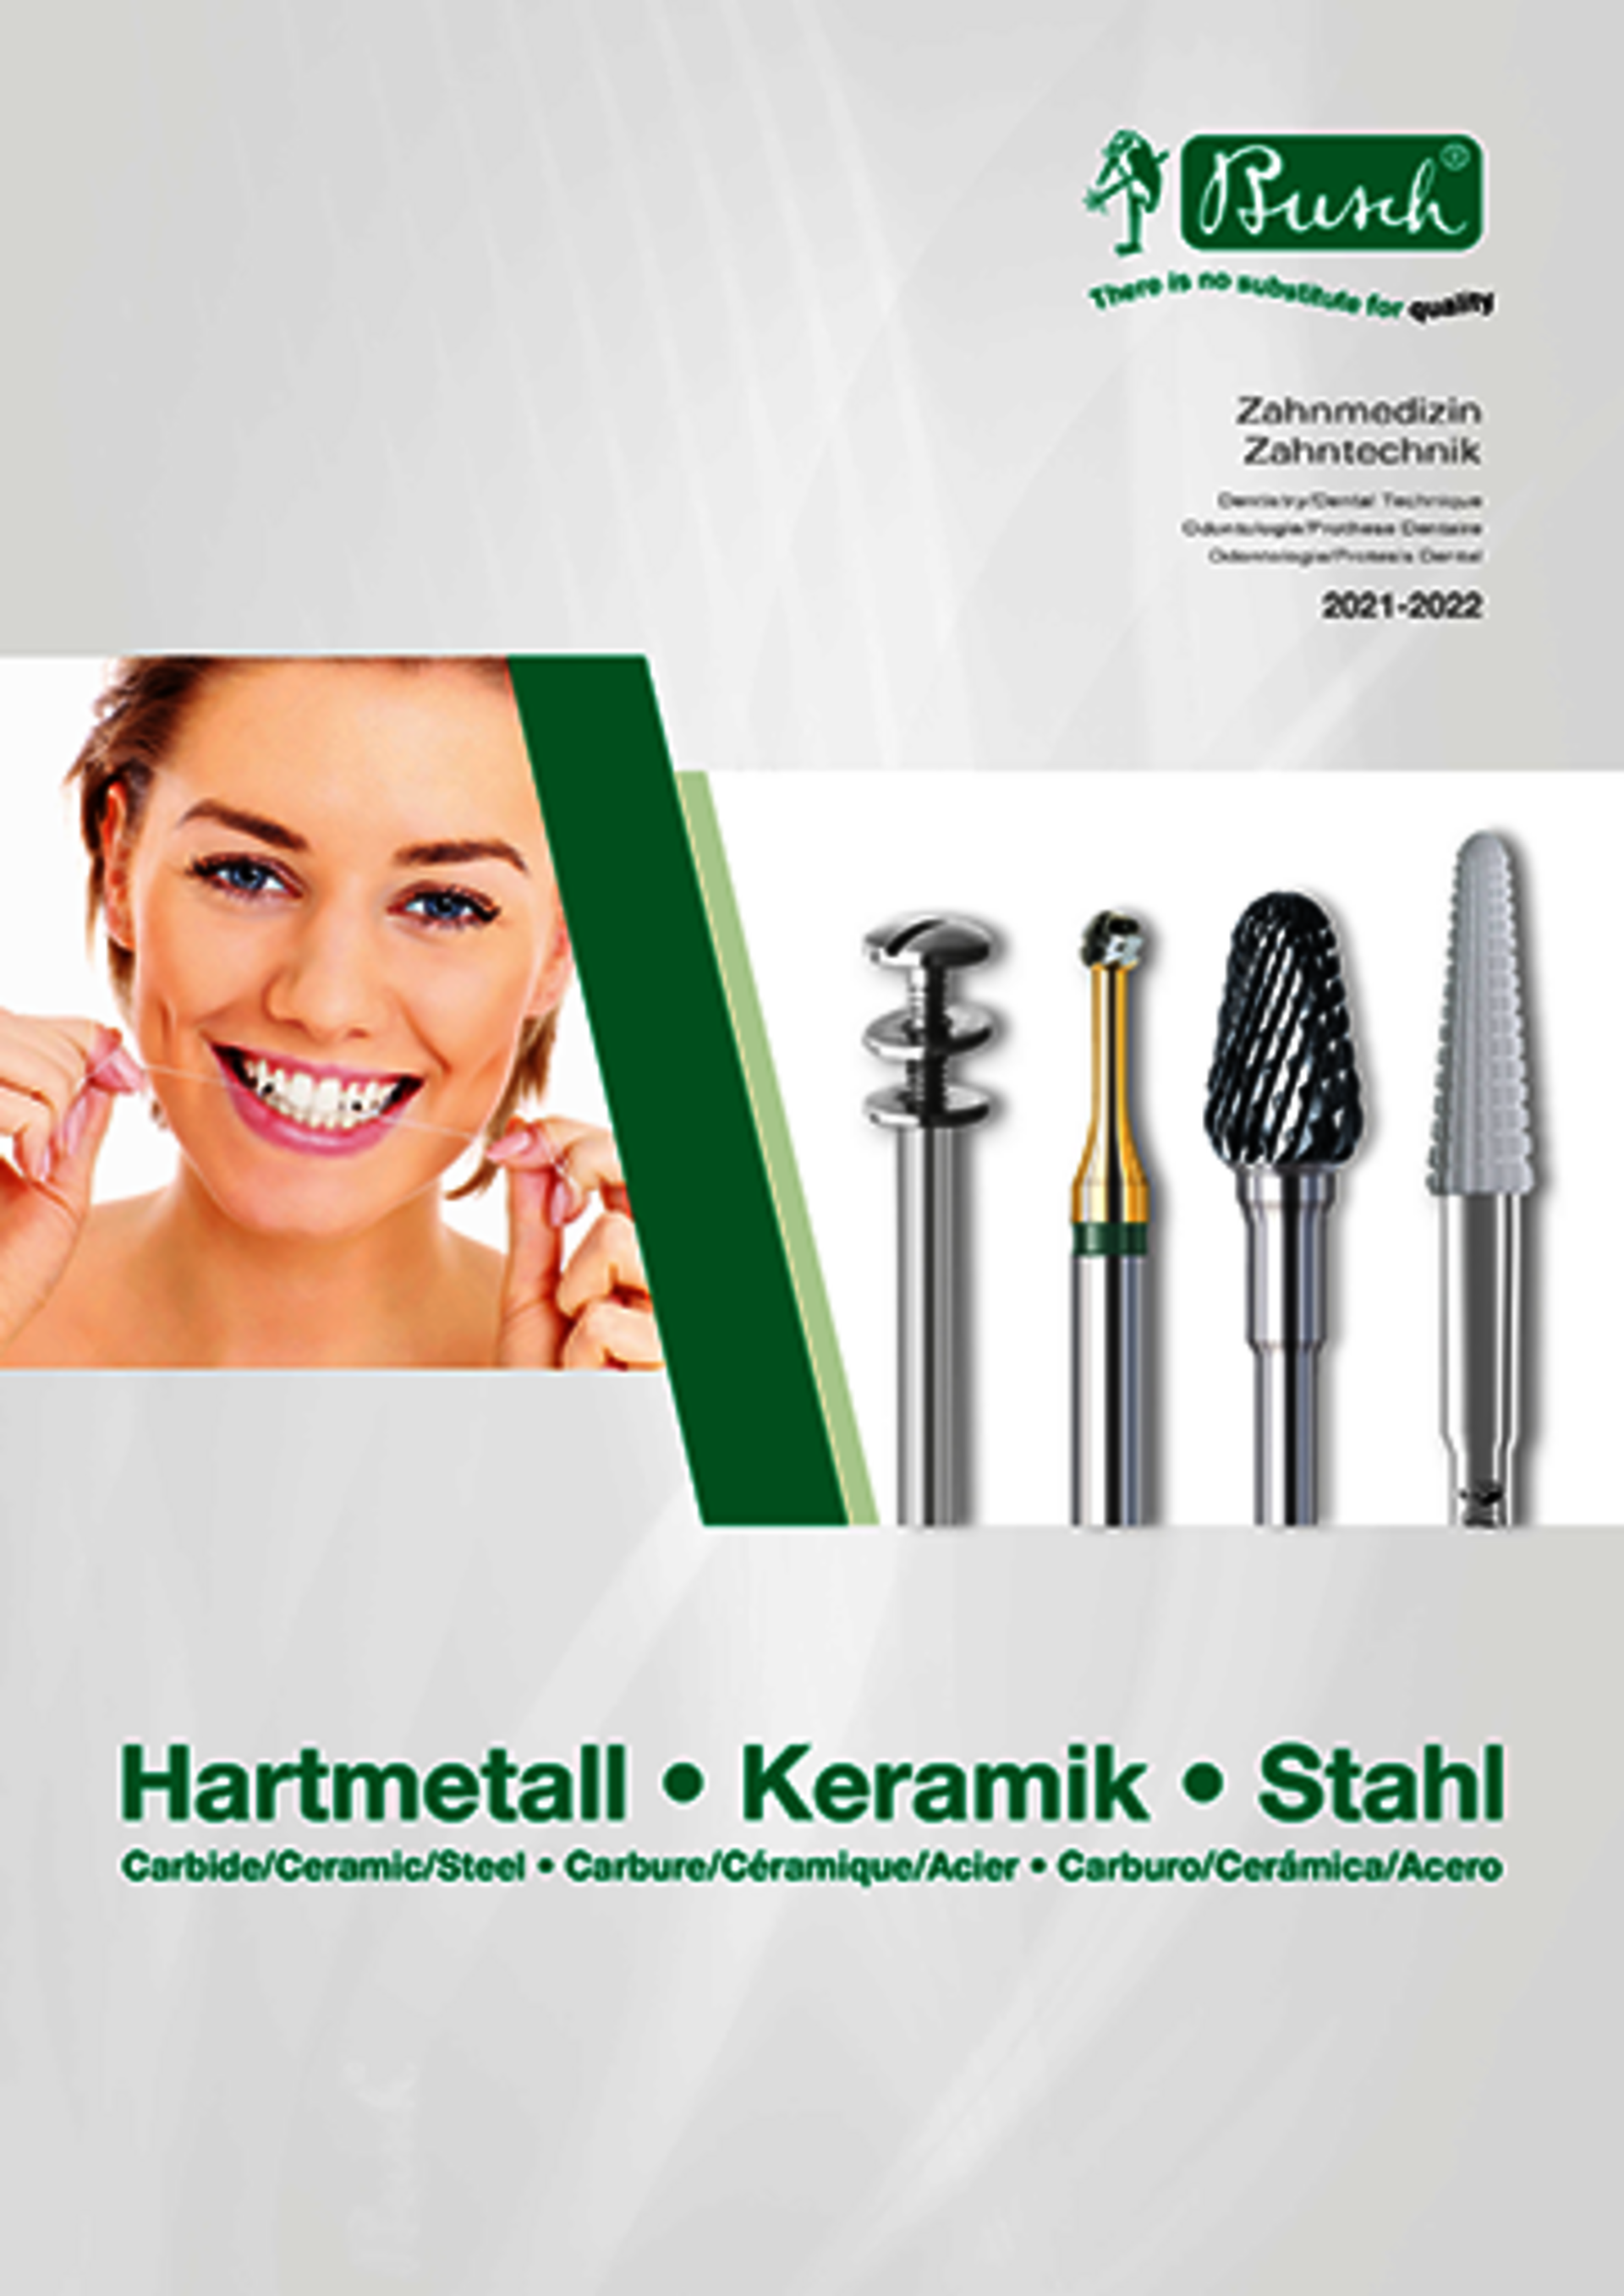 Gesamtkatalog Download - Hartmetall • Keramik • Stahl